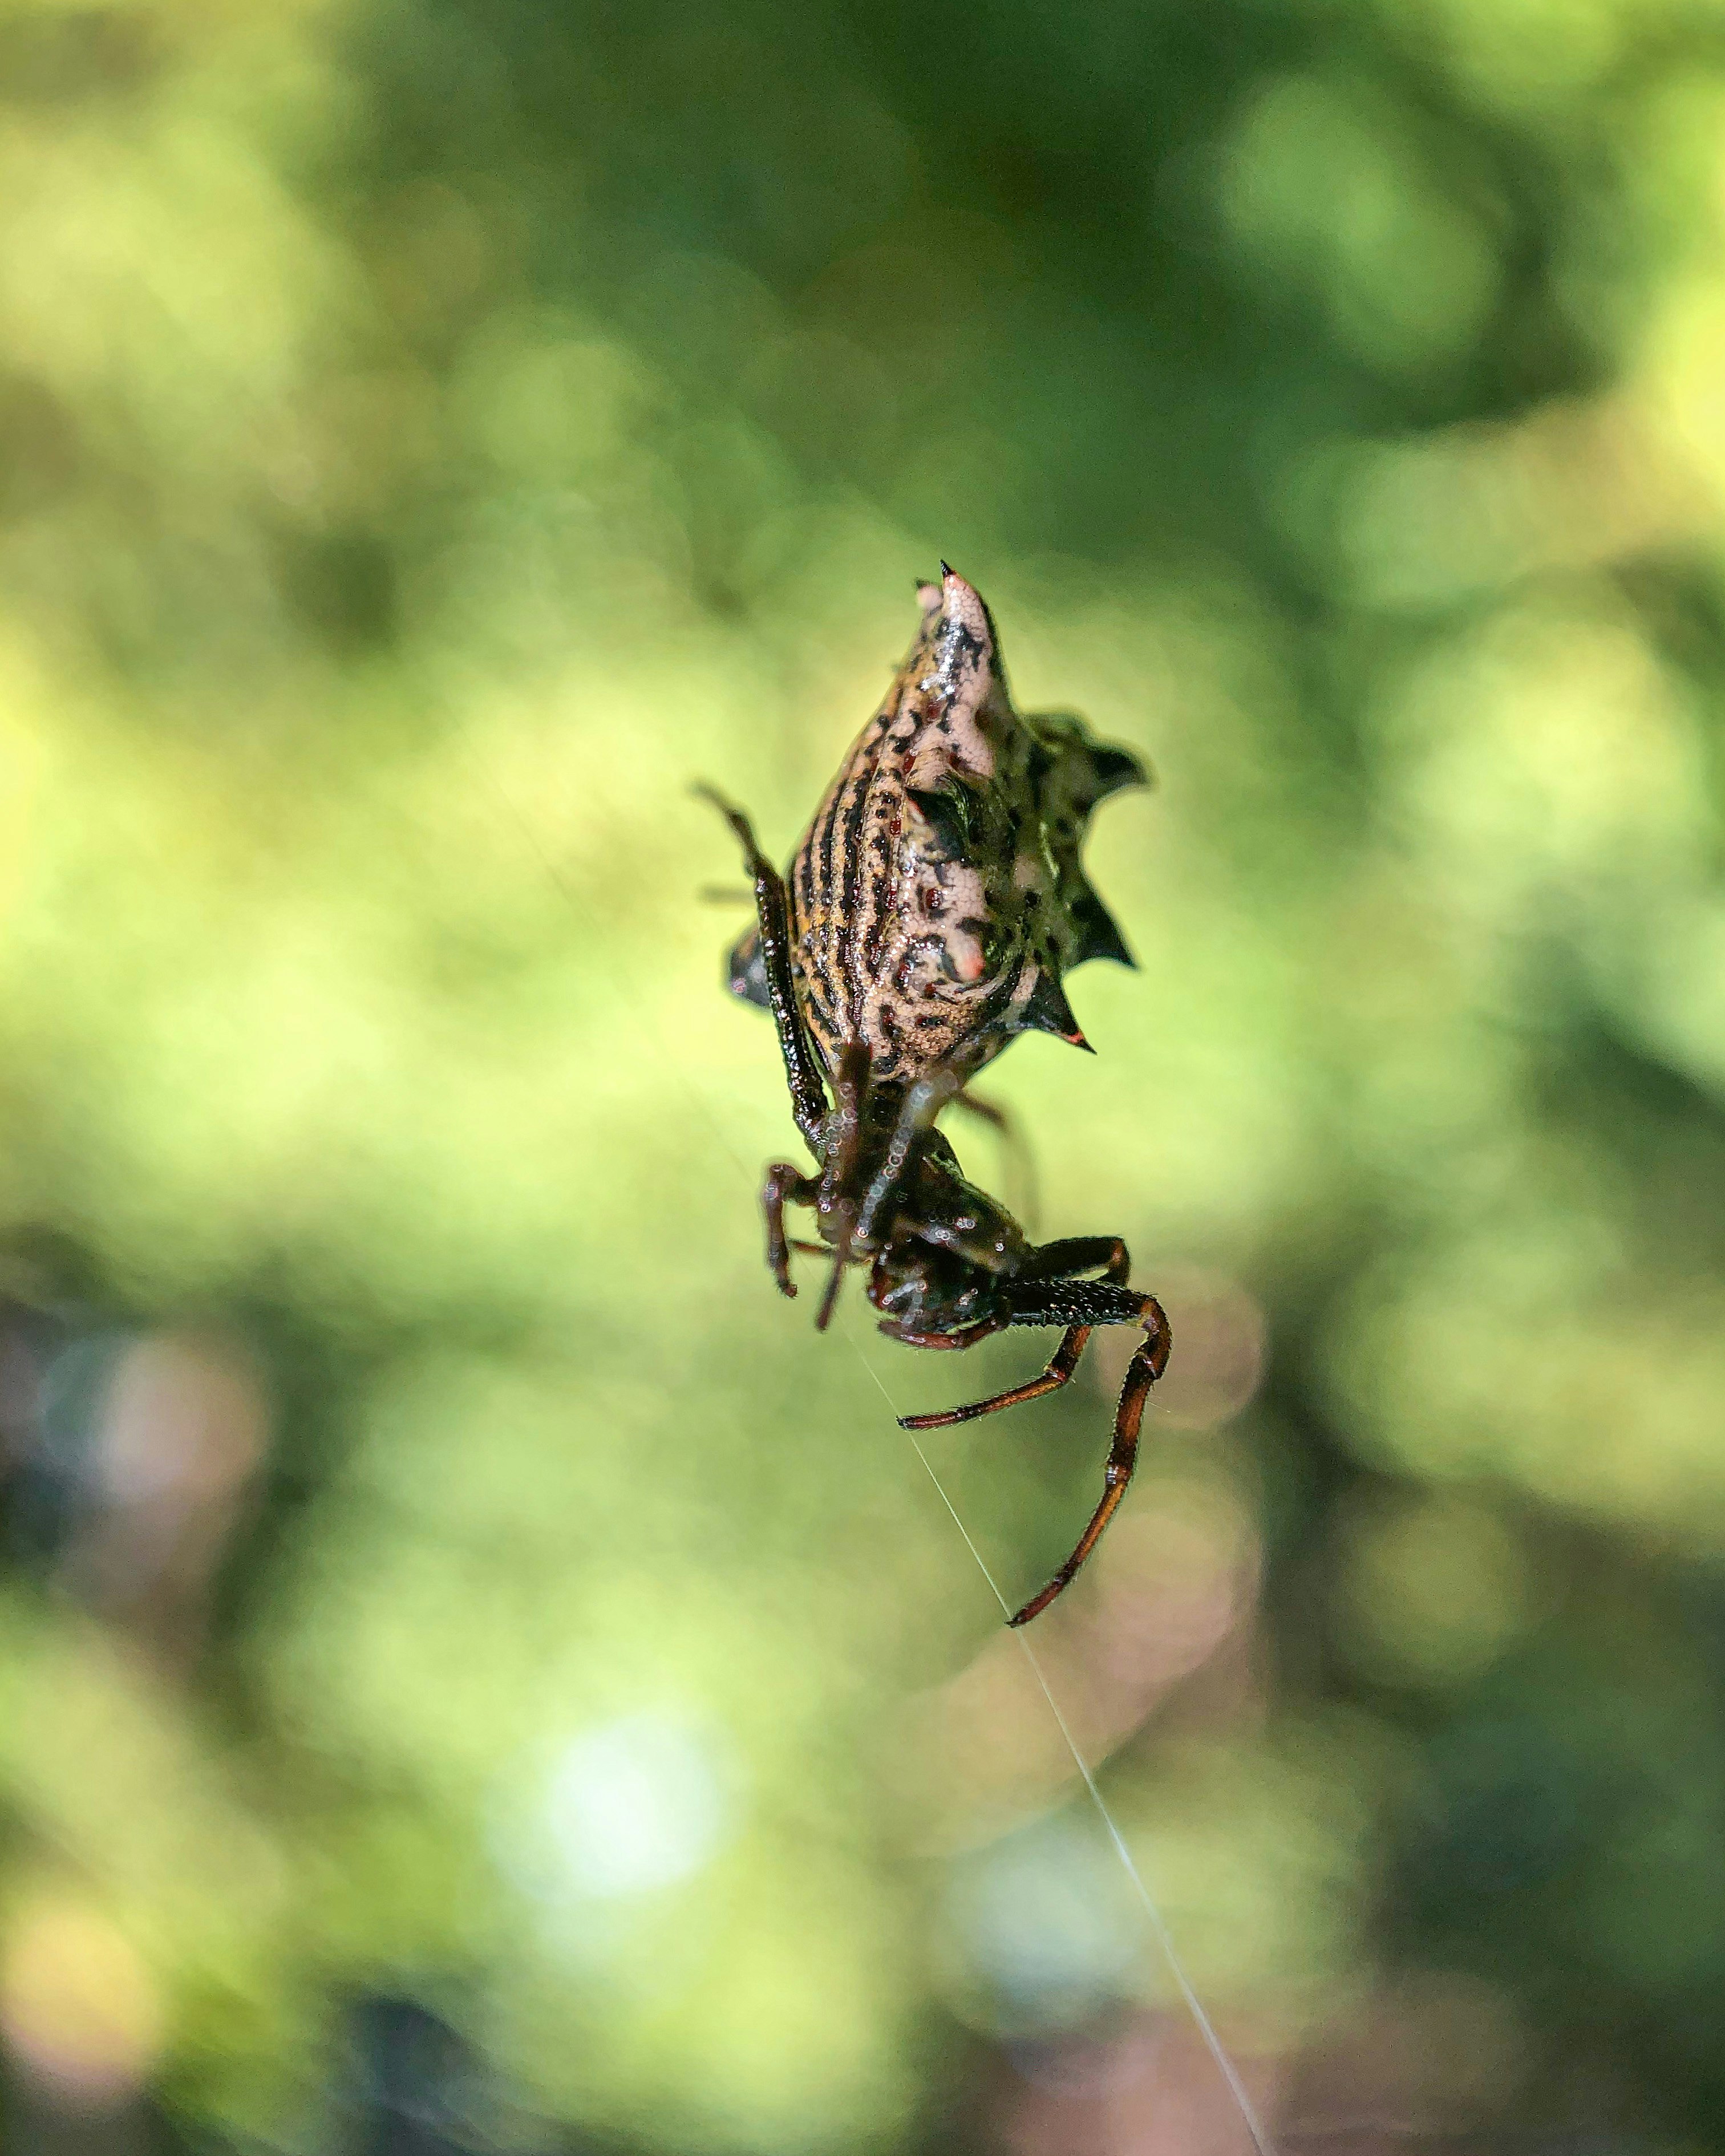 brown and black spider on web in tilt shift lens